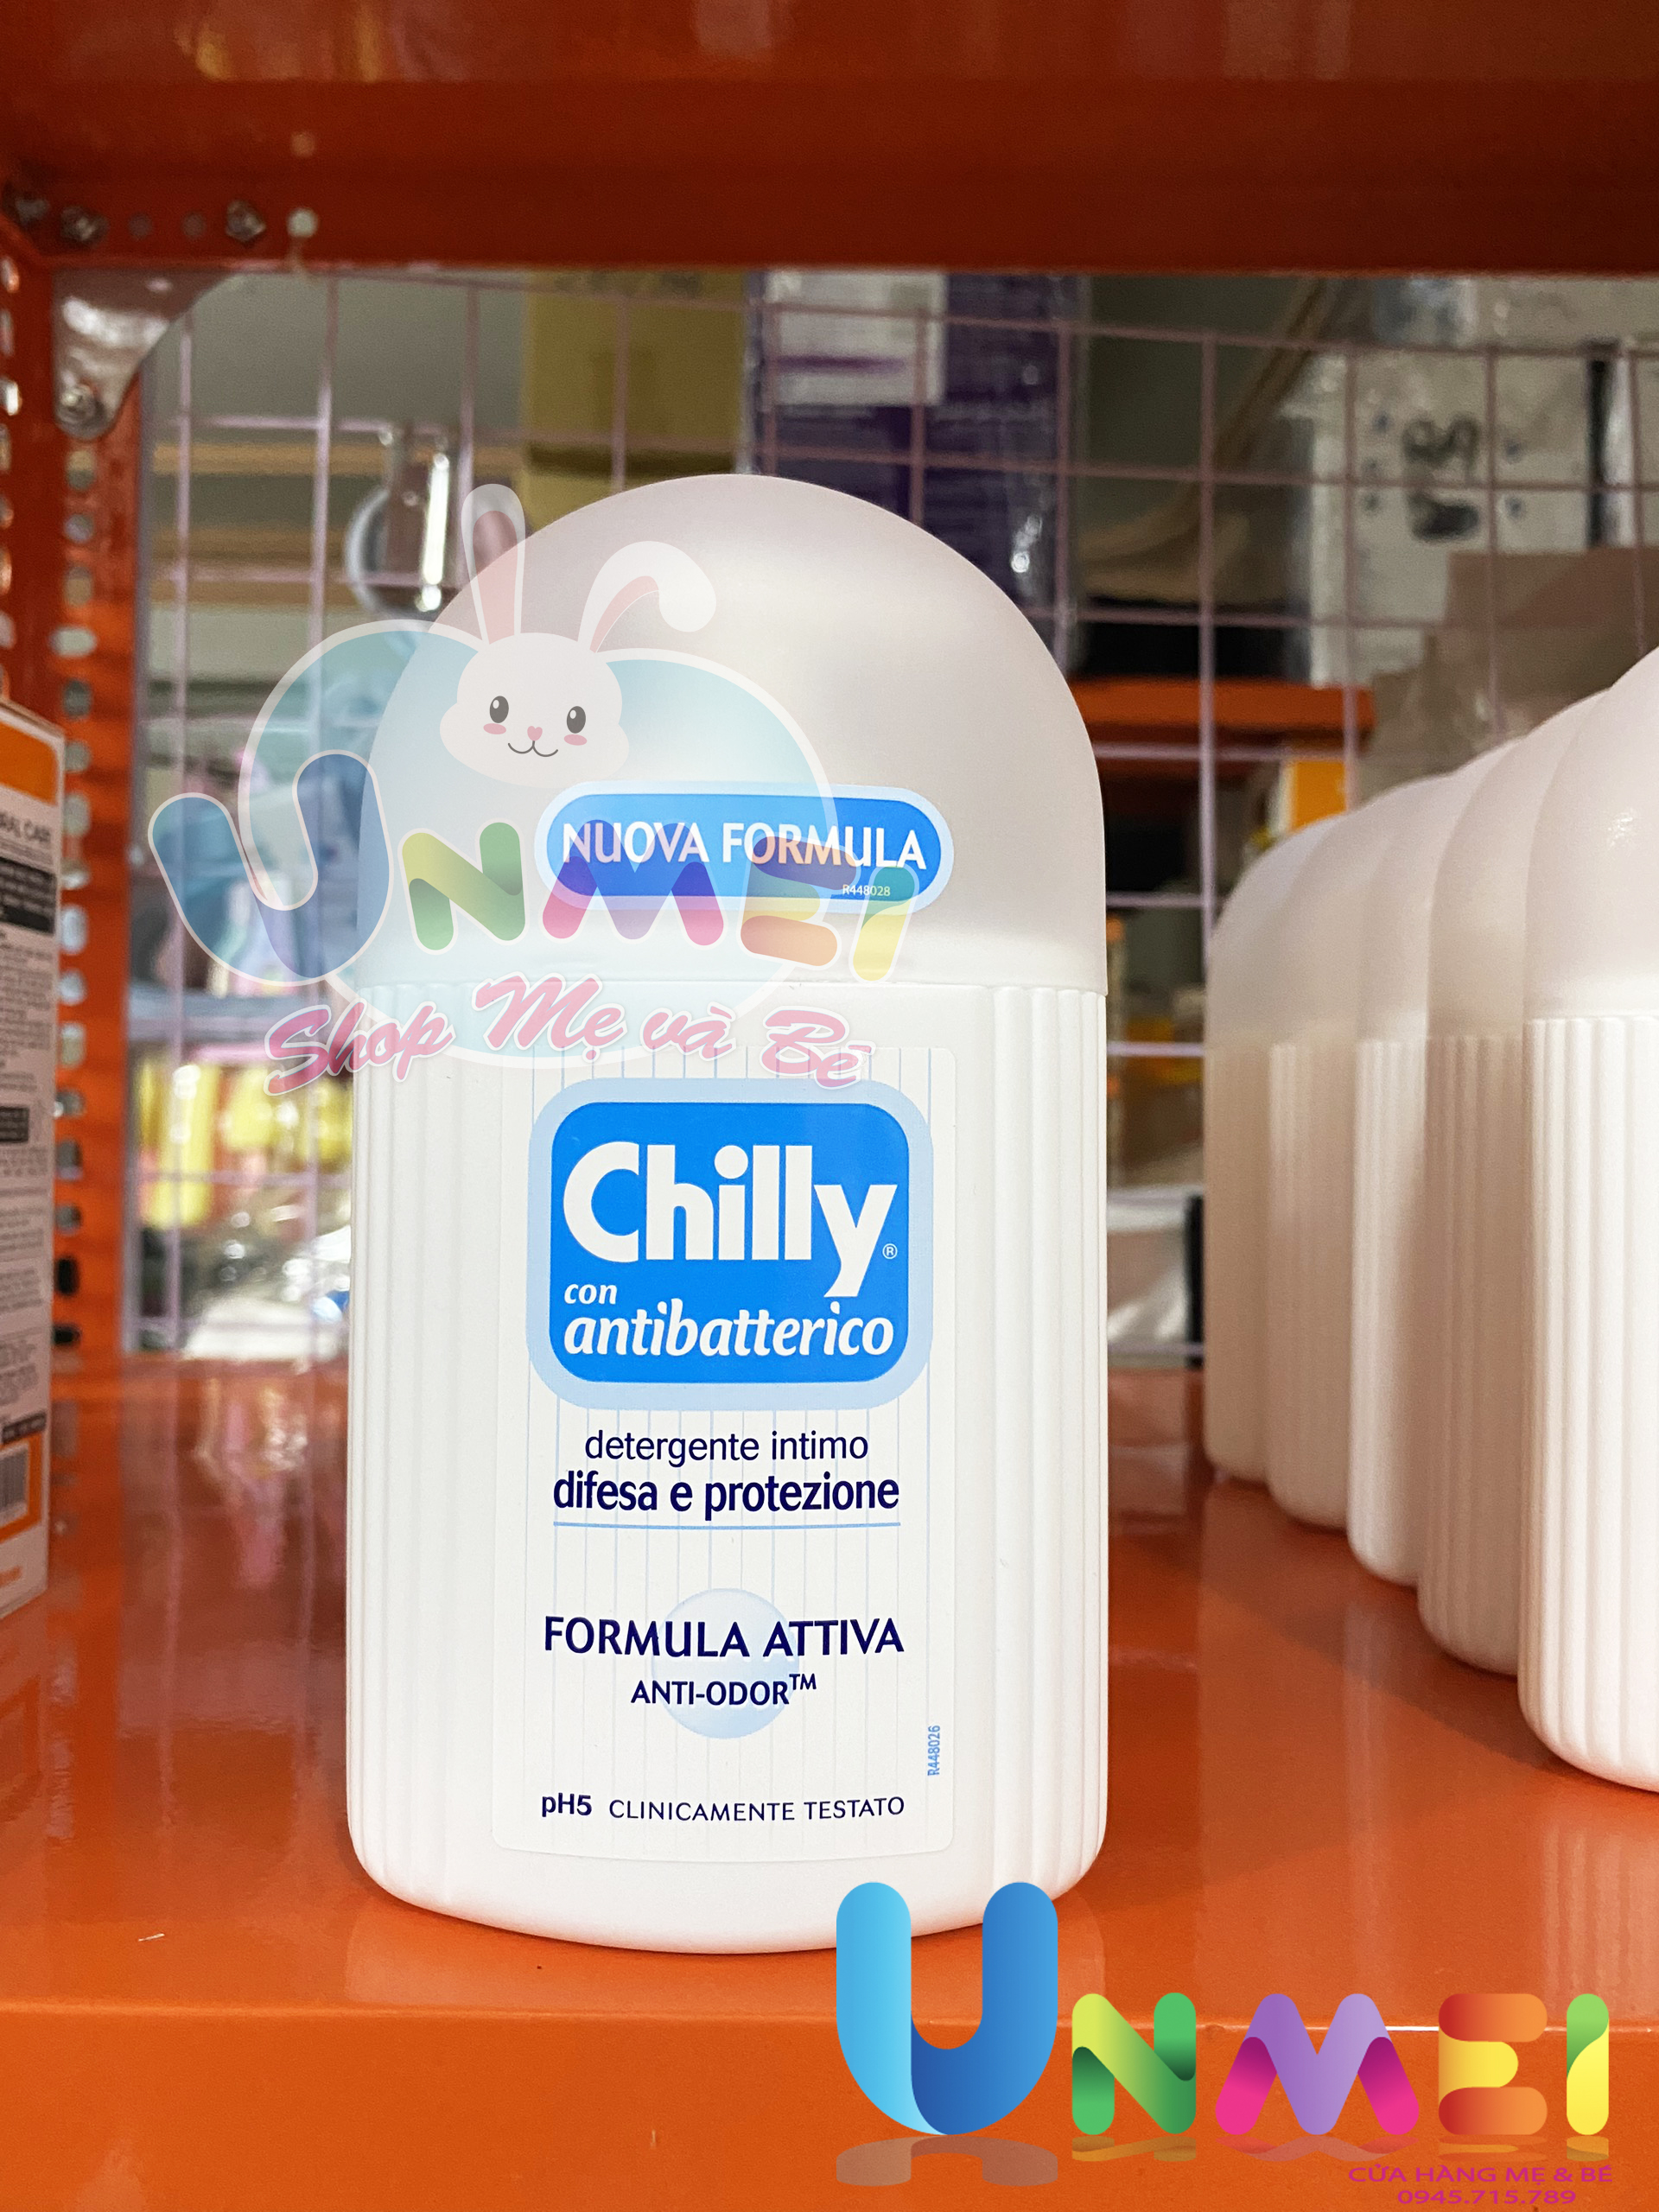 Dung dịch vệ sinh phụ nữ Chilly Gel - Se se lạnh, bùng tươi mát - số 1 tại Italy - 200mlchai - Xanh dương